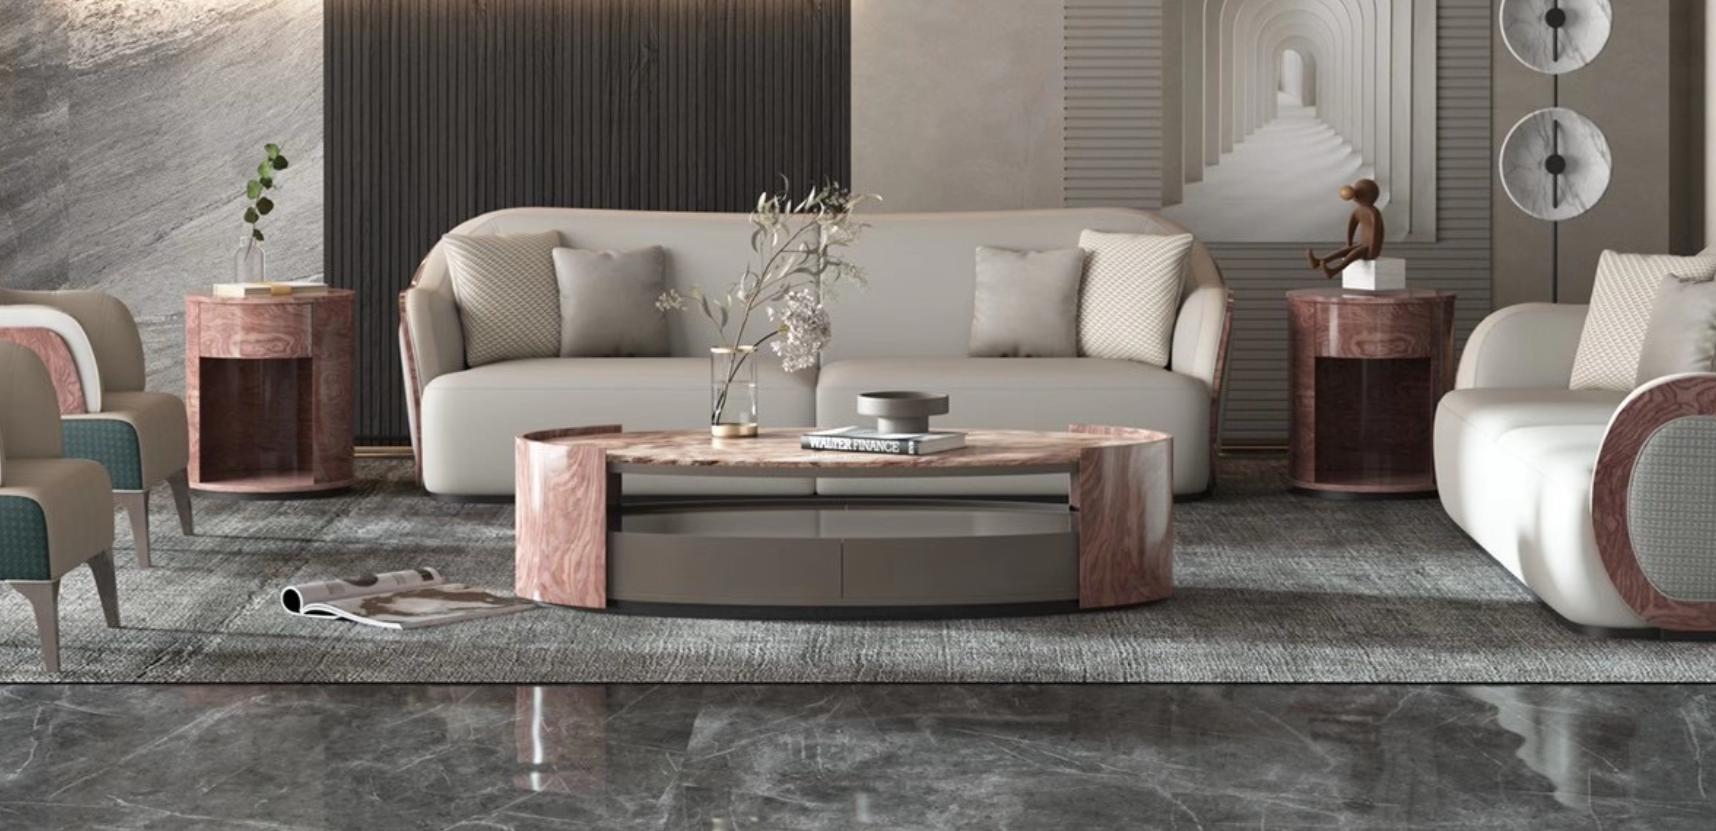 Wohnzimmer Couchtisch Beistelltisch Design Couchtische Sofa Tisch Luxus